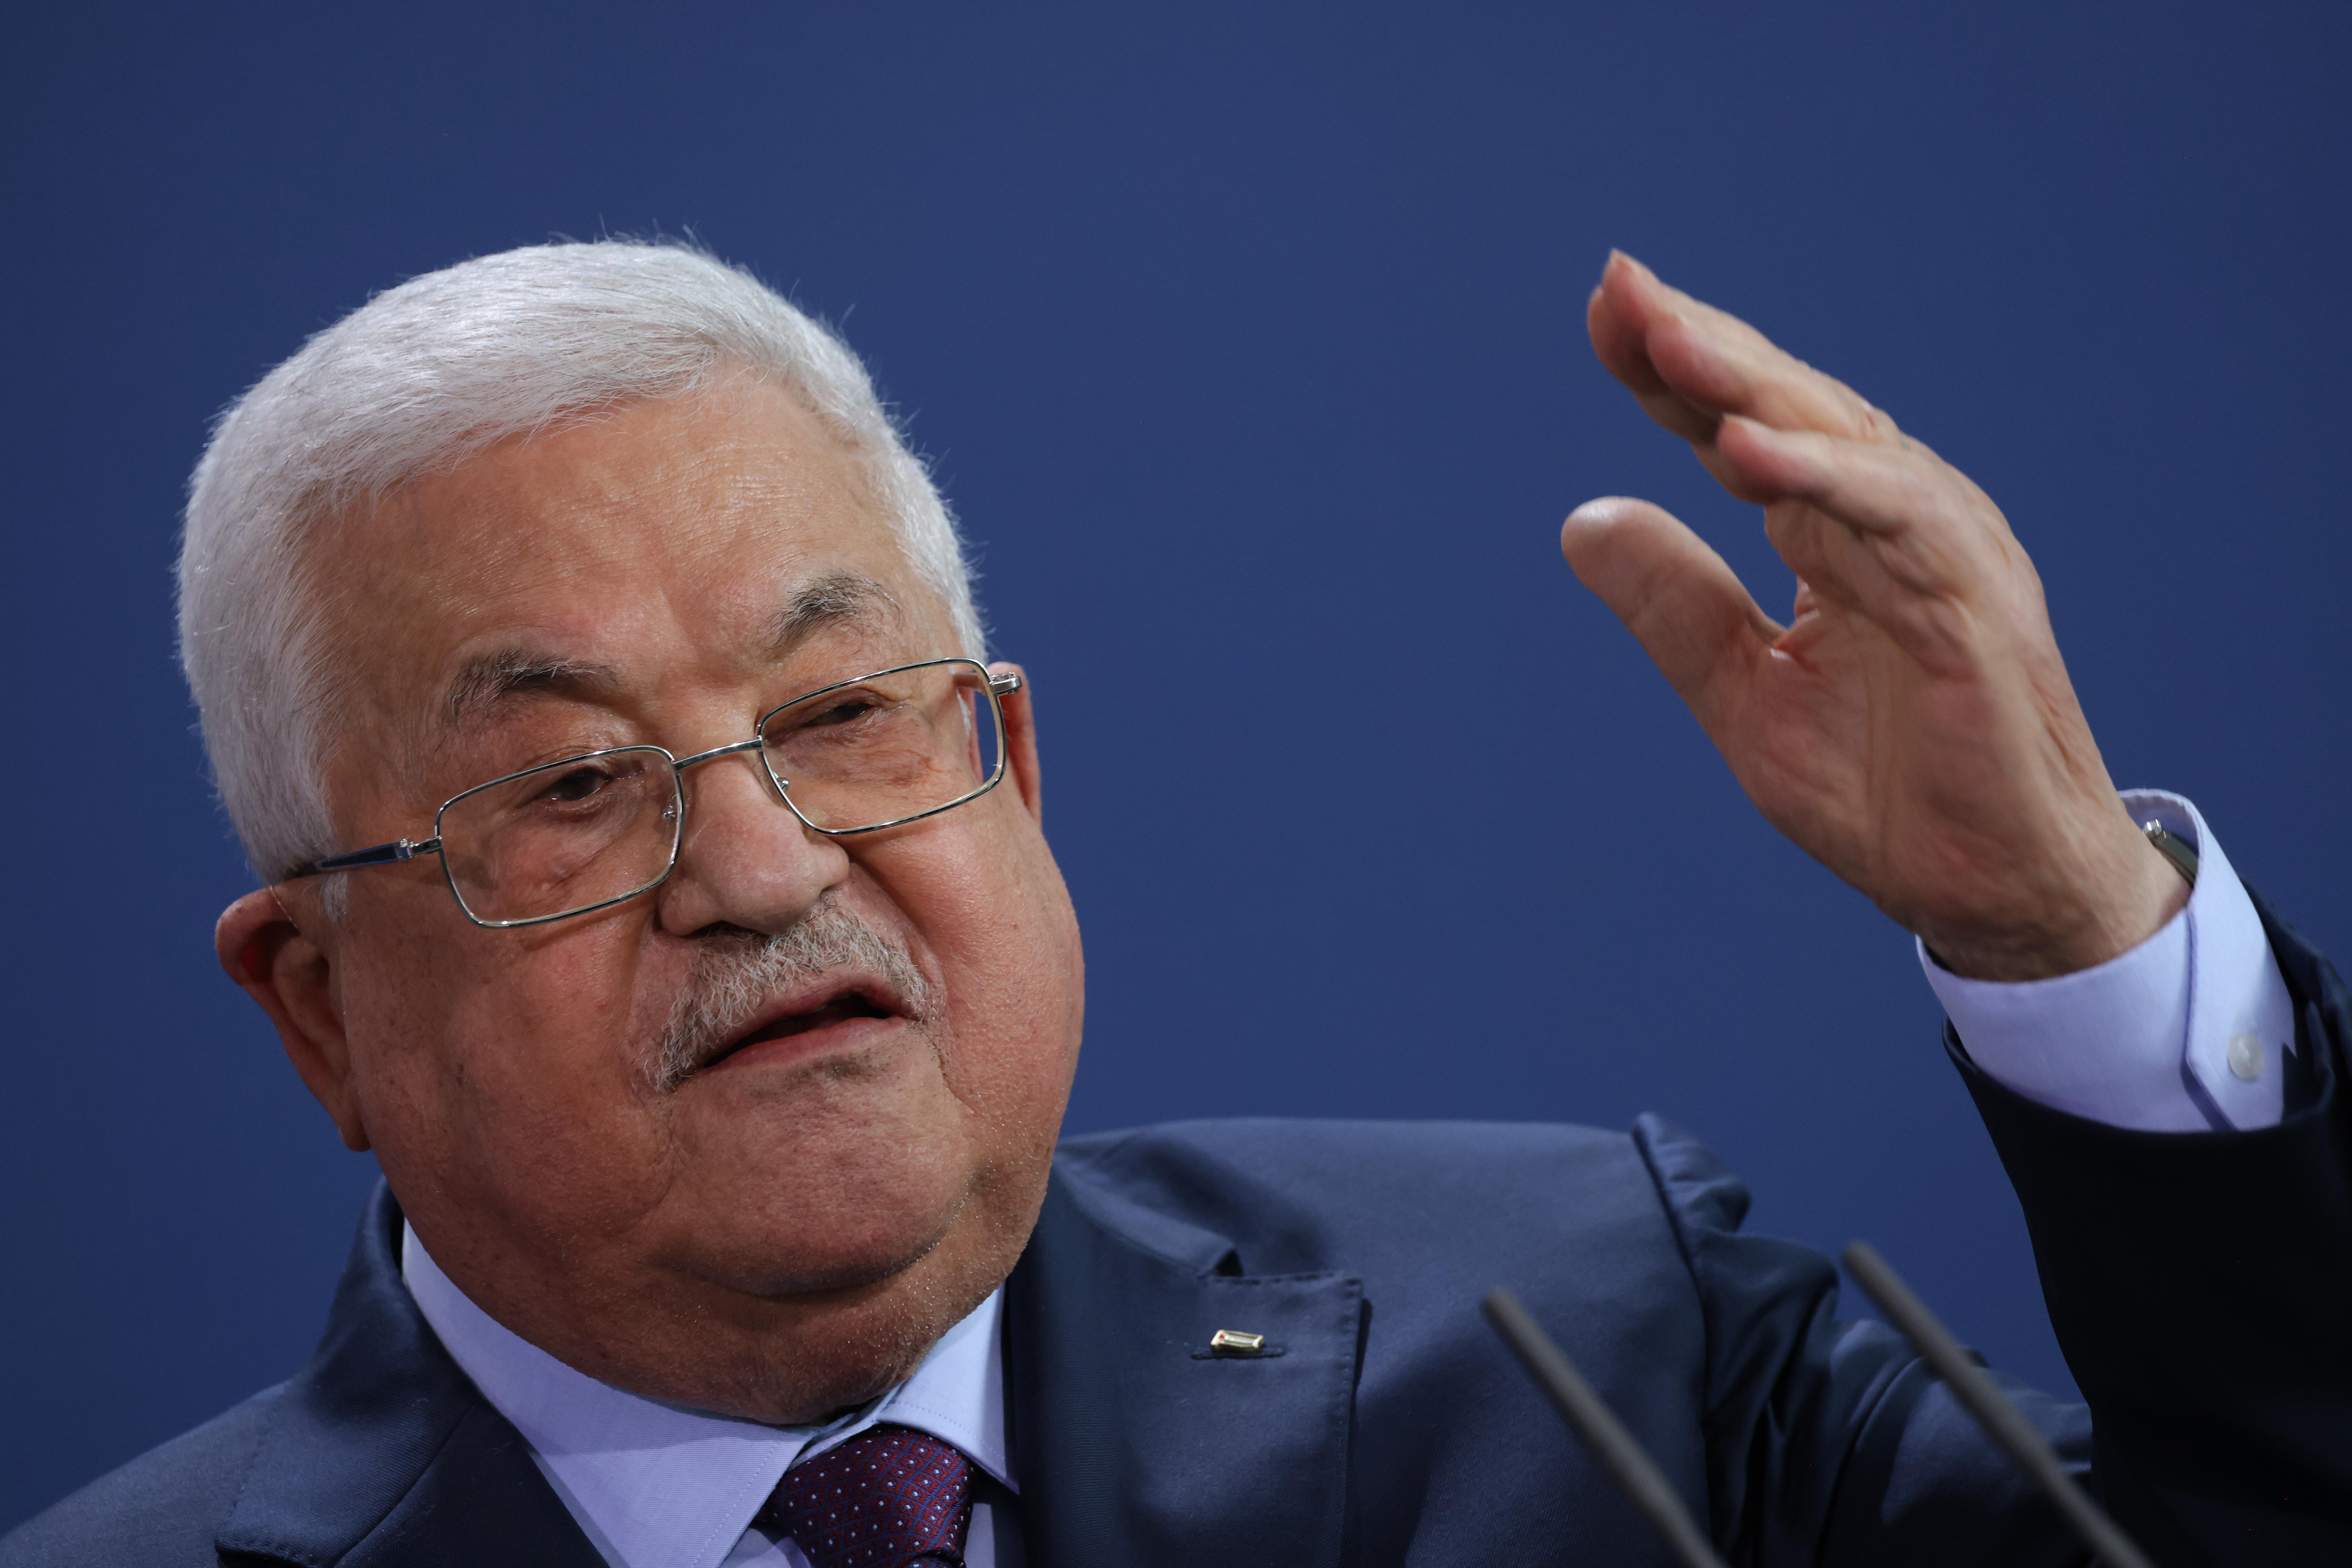 Mahmoud Abbas gestures while speaking.